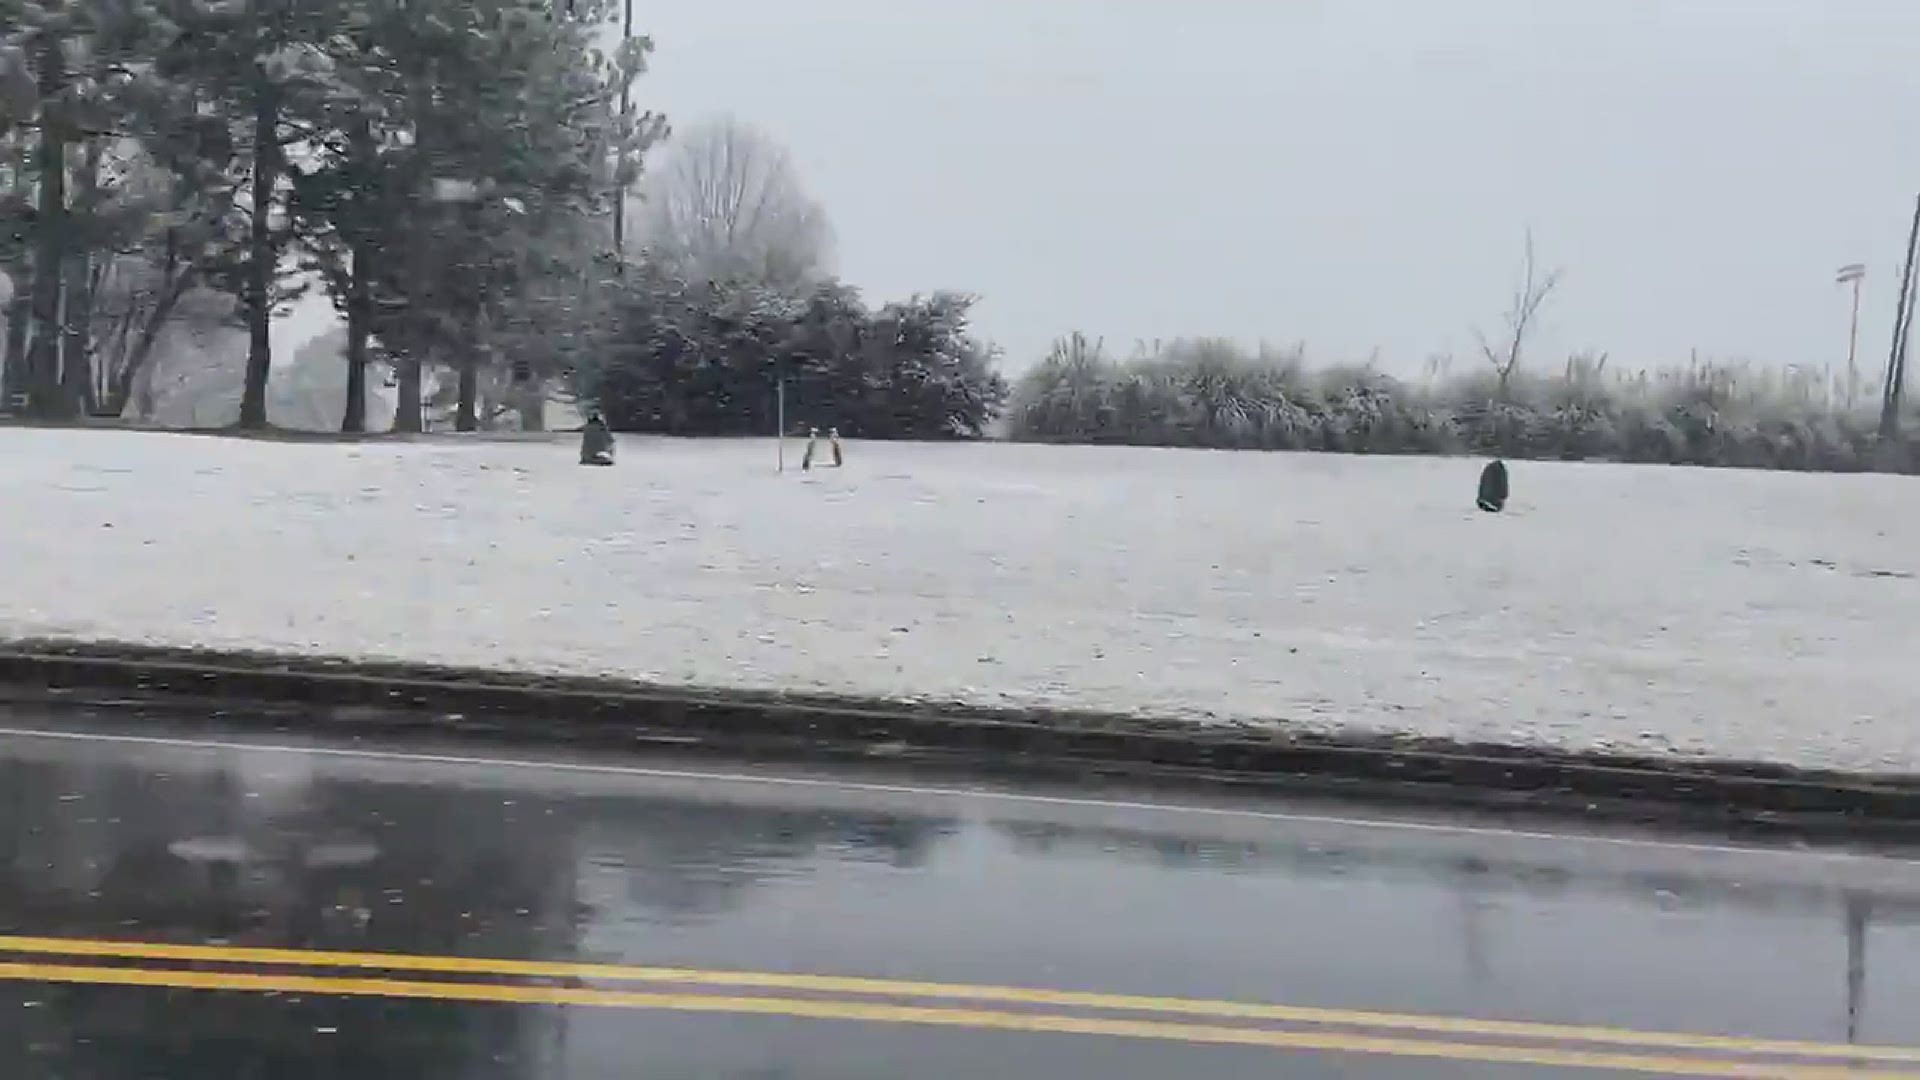 CBS19's Reagan Roy captured video of snowfall at UT Tyler on Sunday, Jan. 10, 2021.